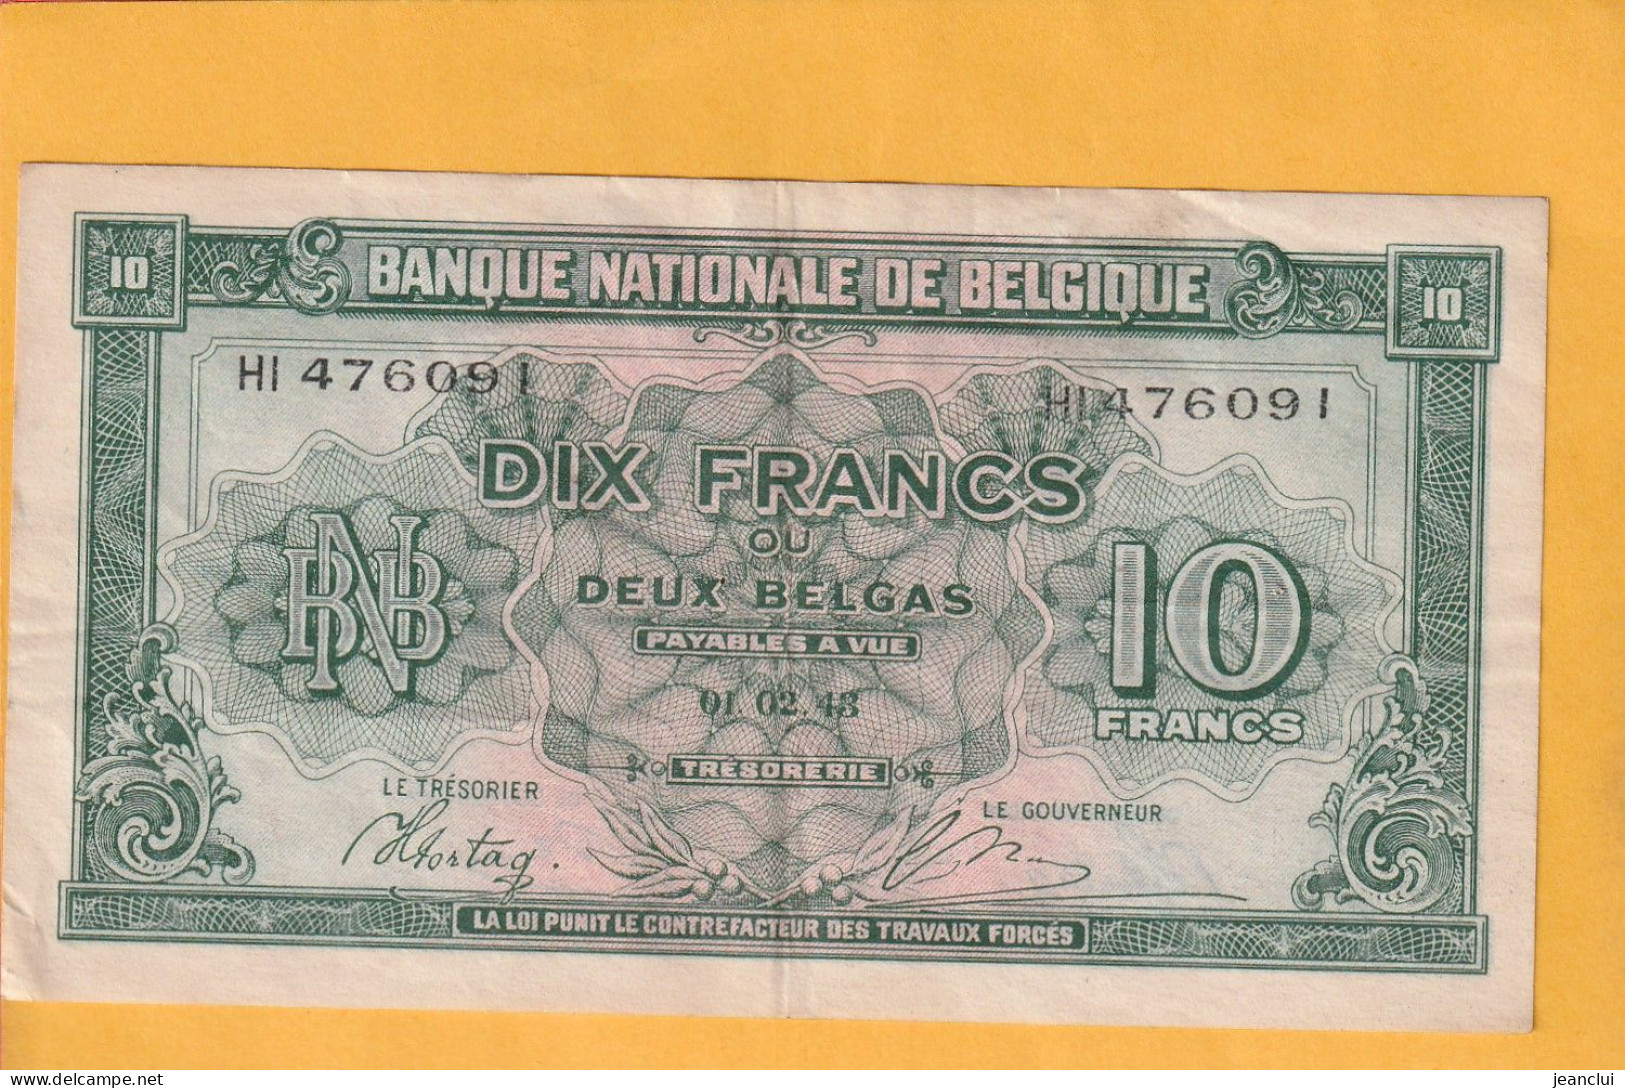 BANQUE NATIONALE DE BELGIQUE . 10 FRANCS = 2 BELGAS  . 01-02-1943 . N°  HI 476091 .  2 SCANNES .  BILLET USITE - 10 Francos-2 Belgas